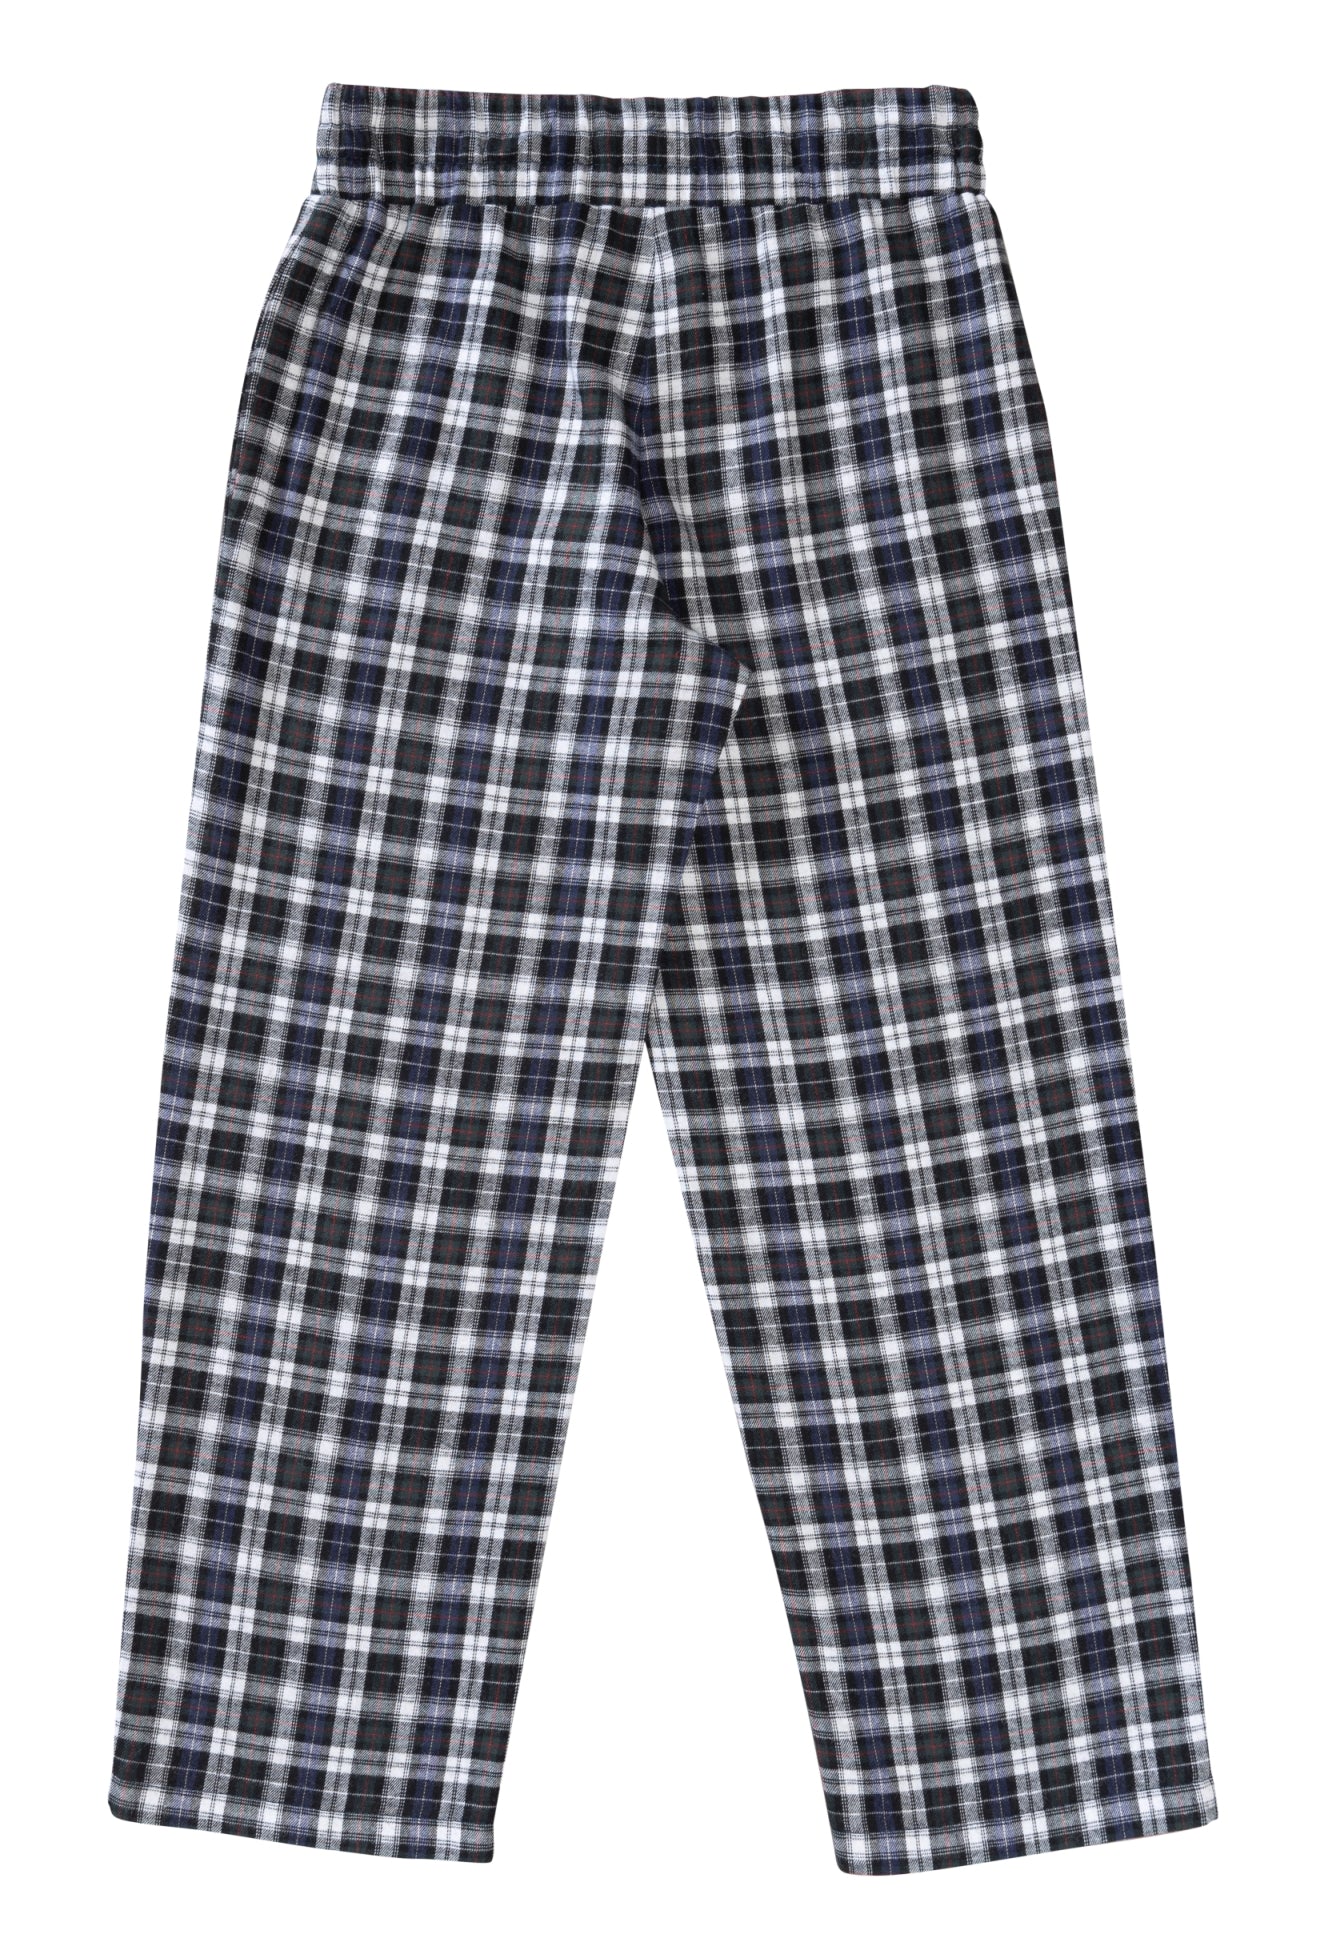 Symønster Burda 9288 - Top Pyjamas - Pige Dreng | Billede 8